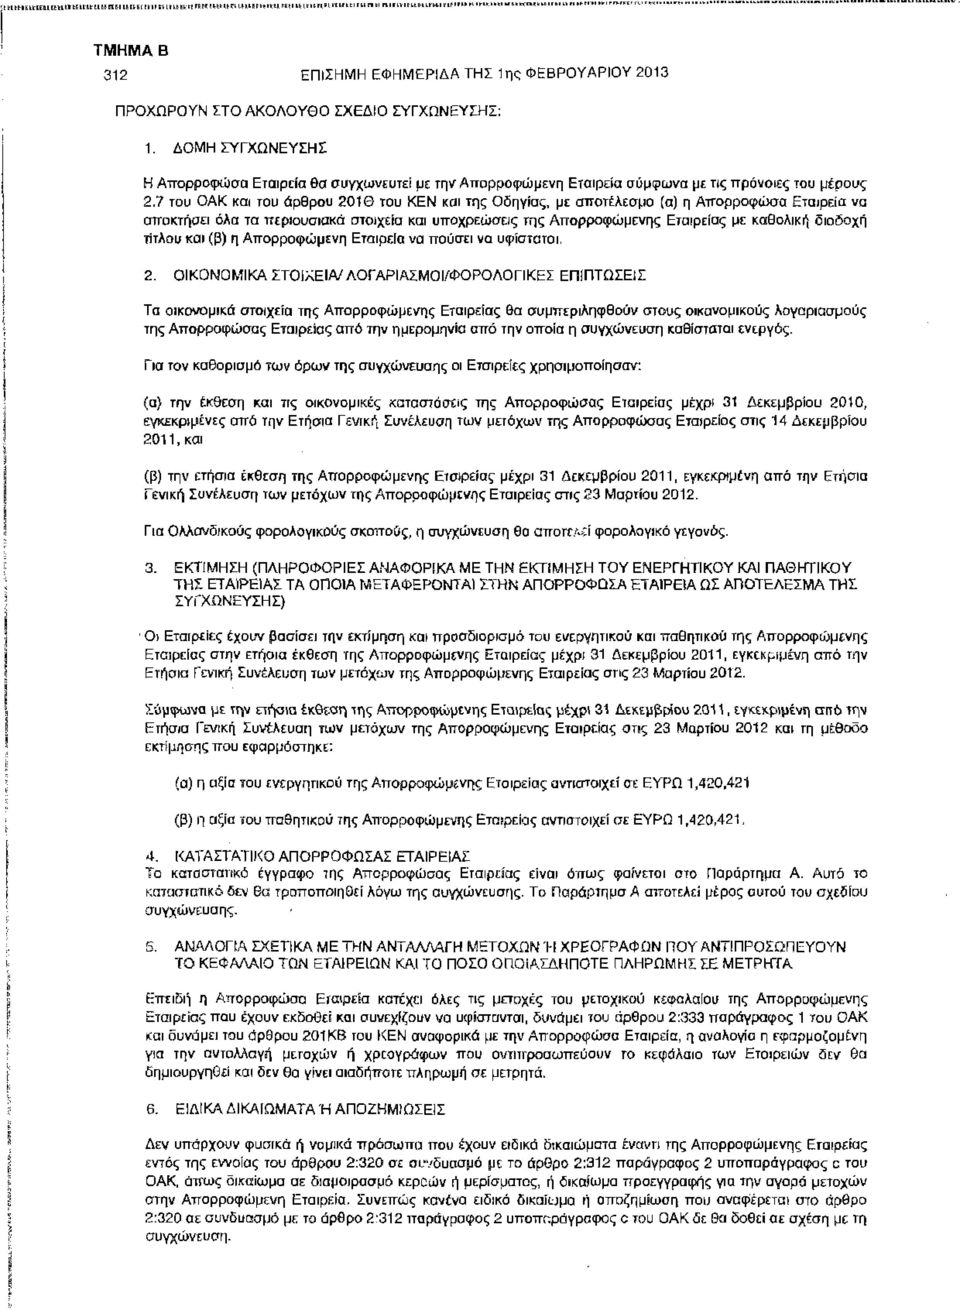 7 του OAK και του άρθρου 2010 του KEN και της Οδηγίας, με αποτέλεσμα [α) η Αττορροφωσα Εταιρεία να αποκτήσει όλα τα περιουσιακά στοιχεία και υποχρεώσεις της Απορροφώμενης Εταιρείας με καθολική